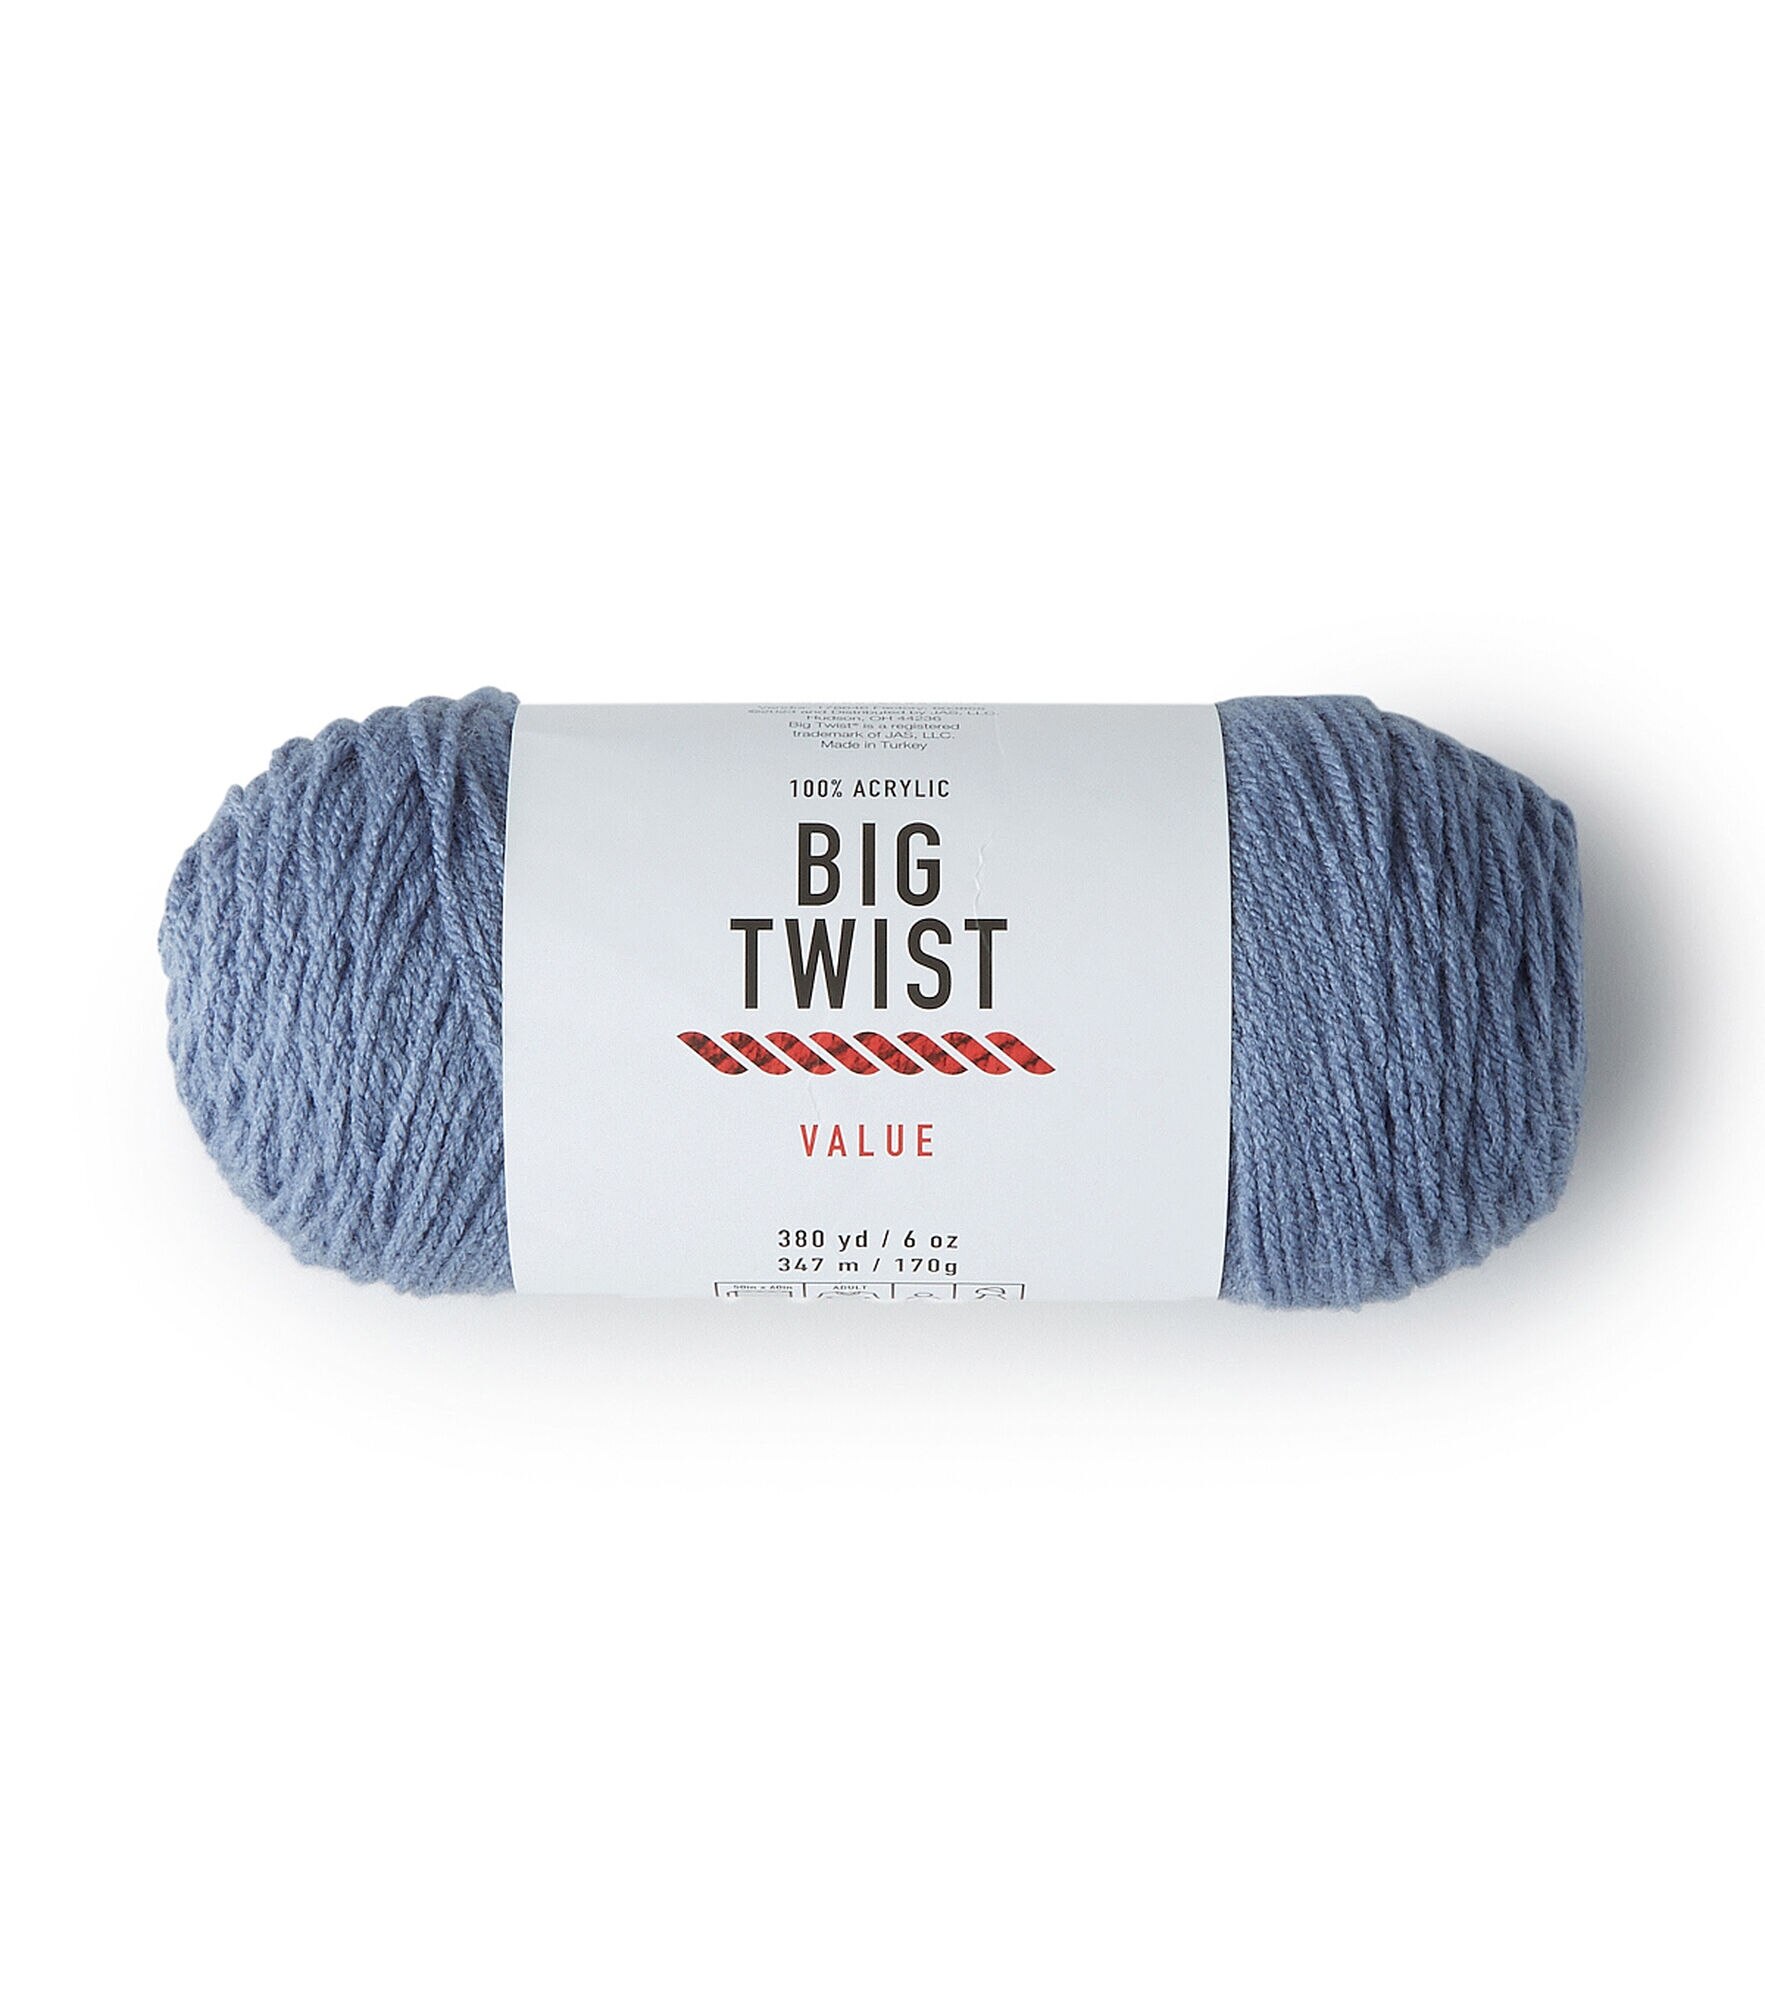 6oz Solid Medium Weight Acrylic 380yd Value Yarn by Big Twist, Denim Blue, hi-res